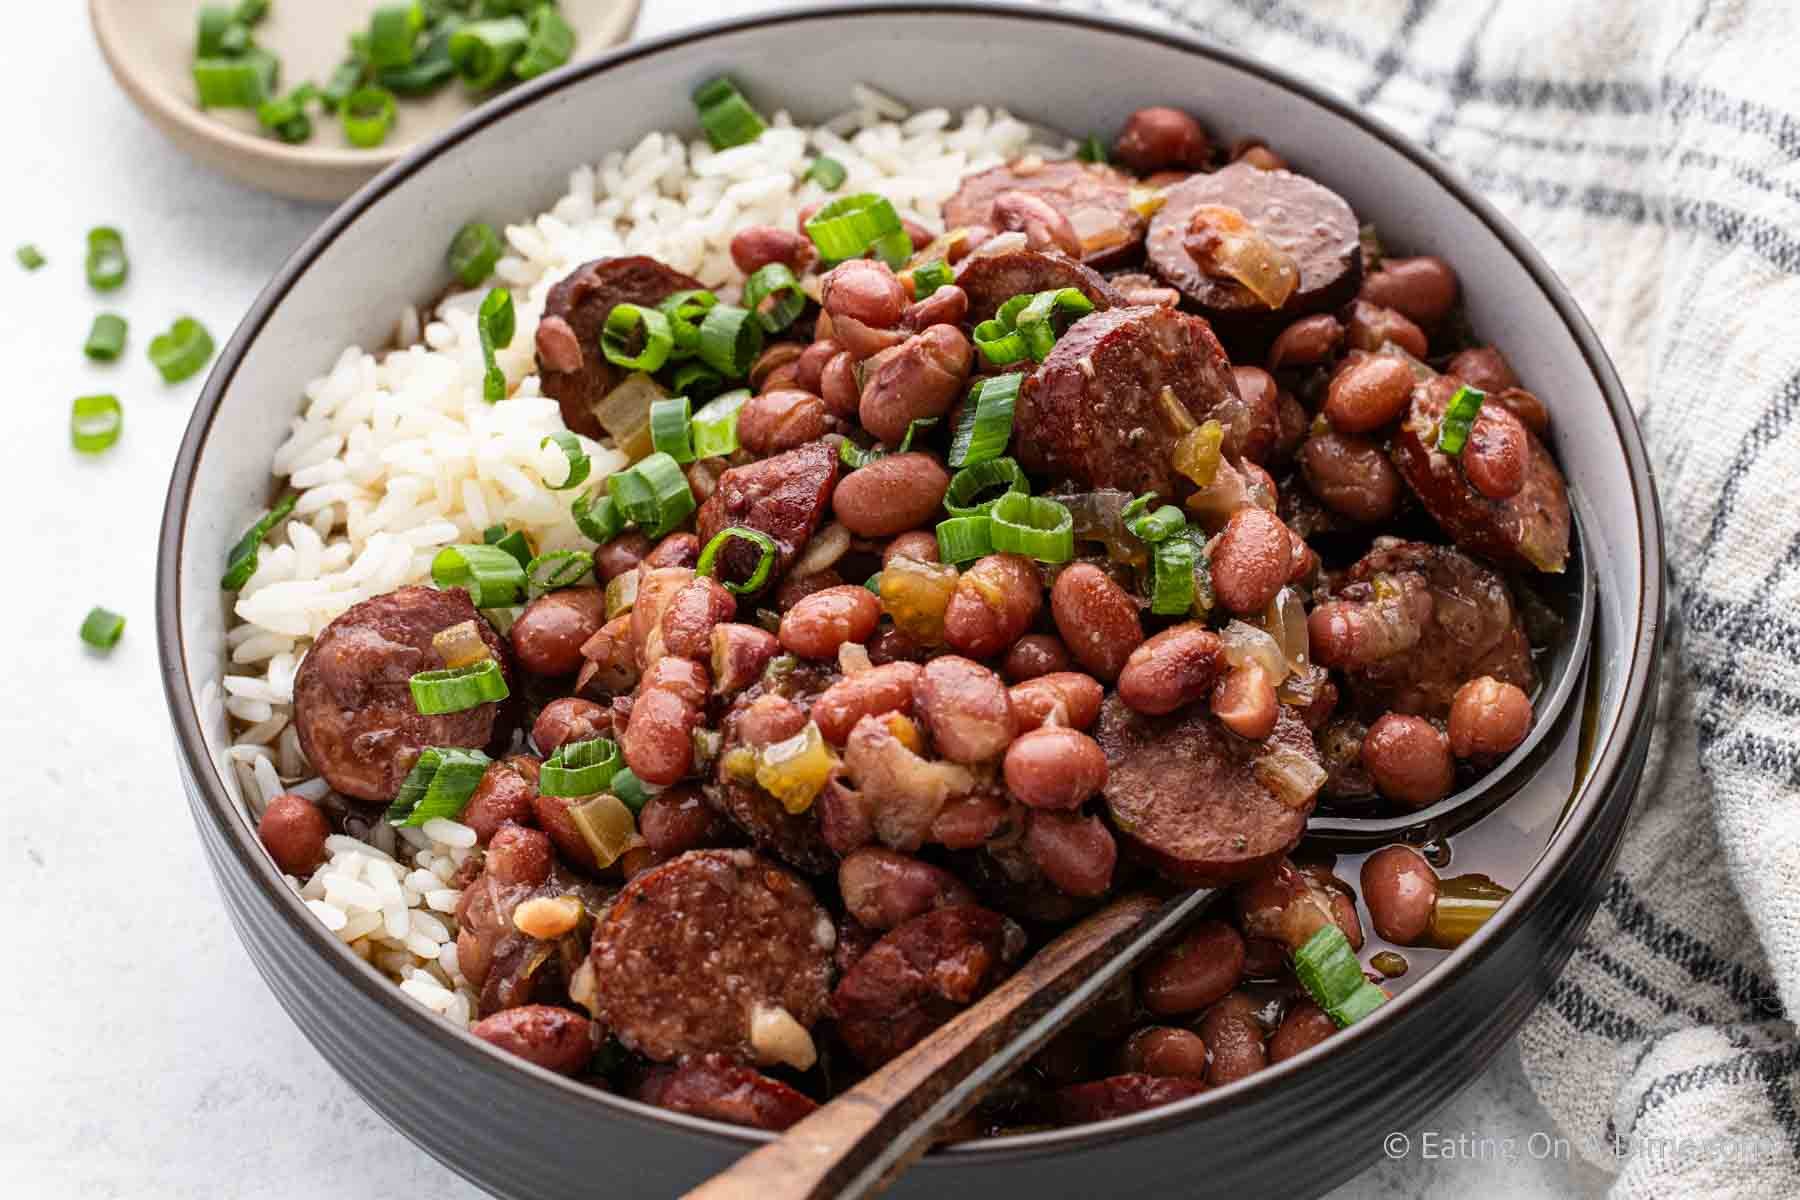 https://www.eatingonadime.com/wp-content/uploads/2019/09/200KB-Slow-Cooker-Red-Beans-and-Rice-2.jpg